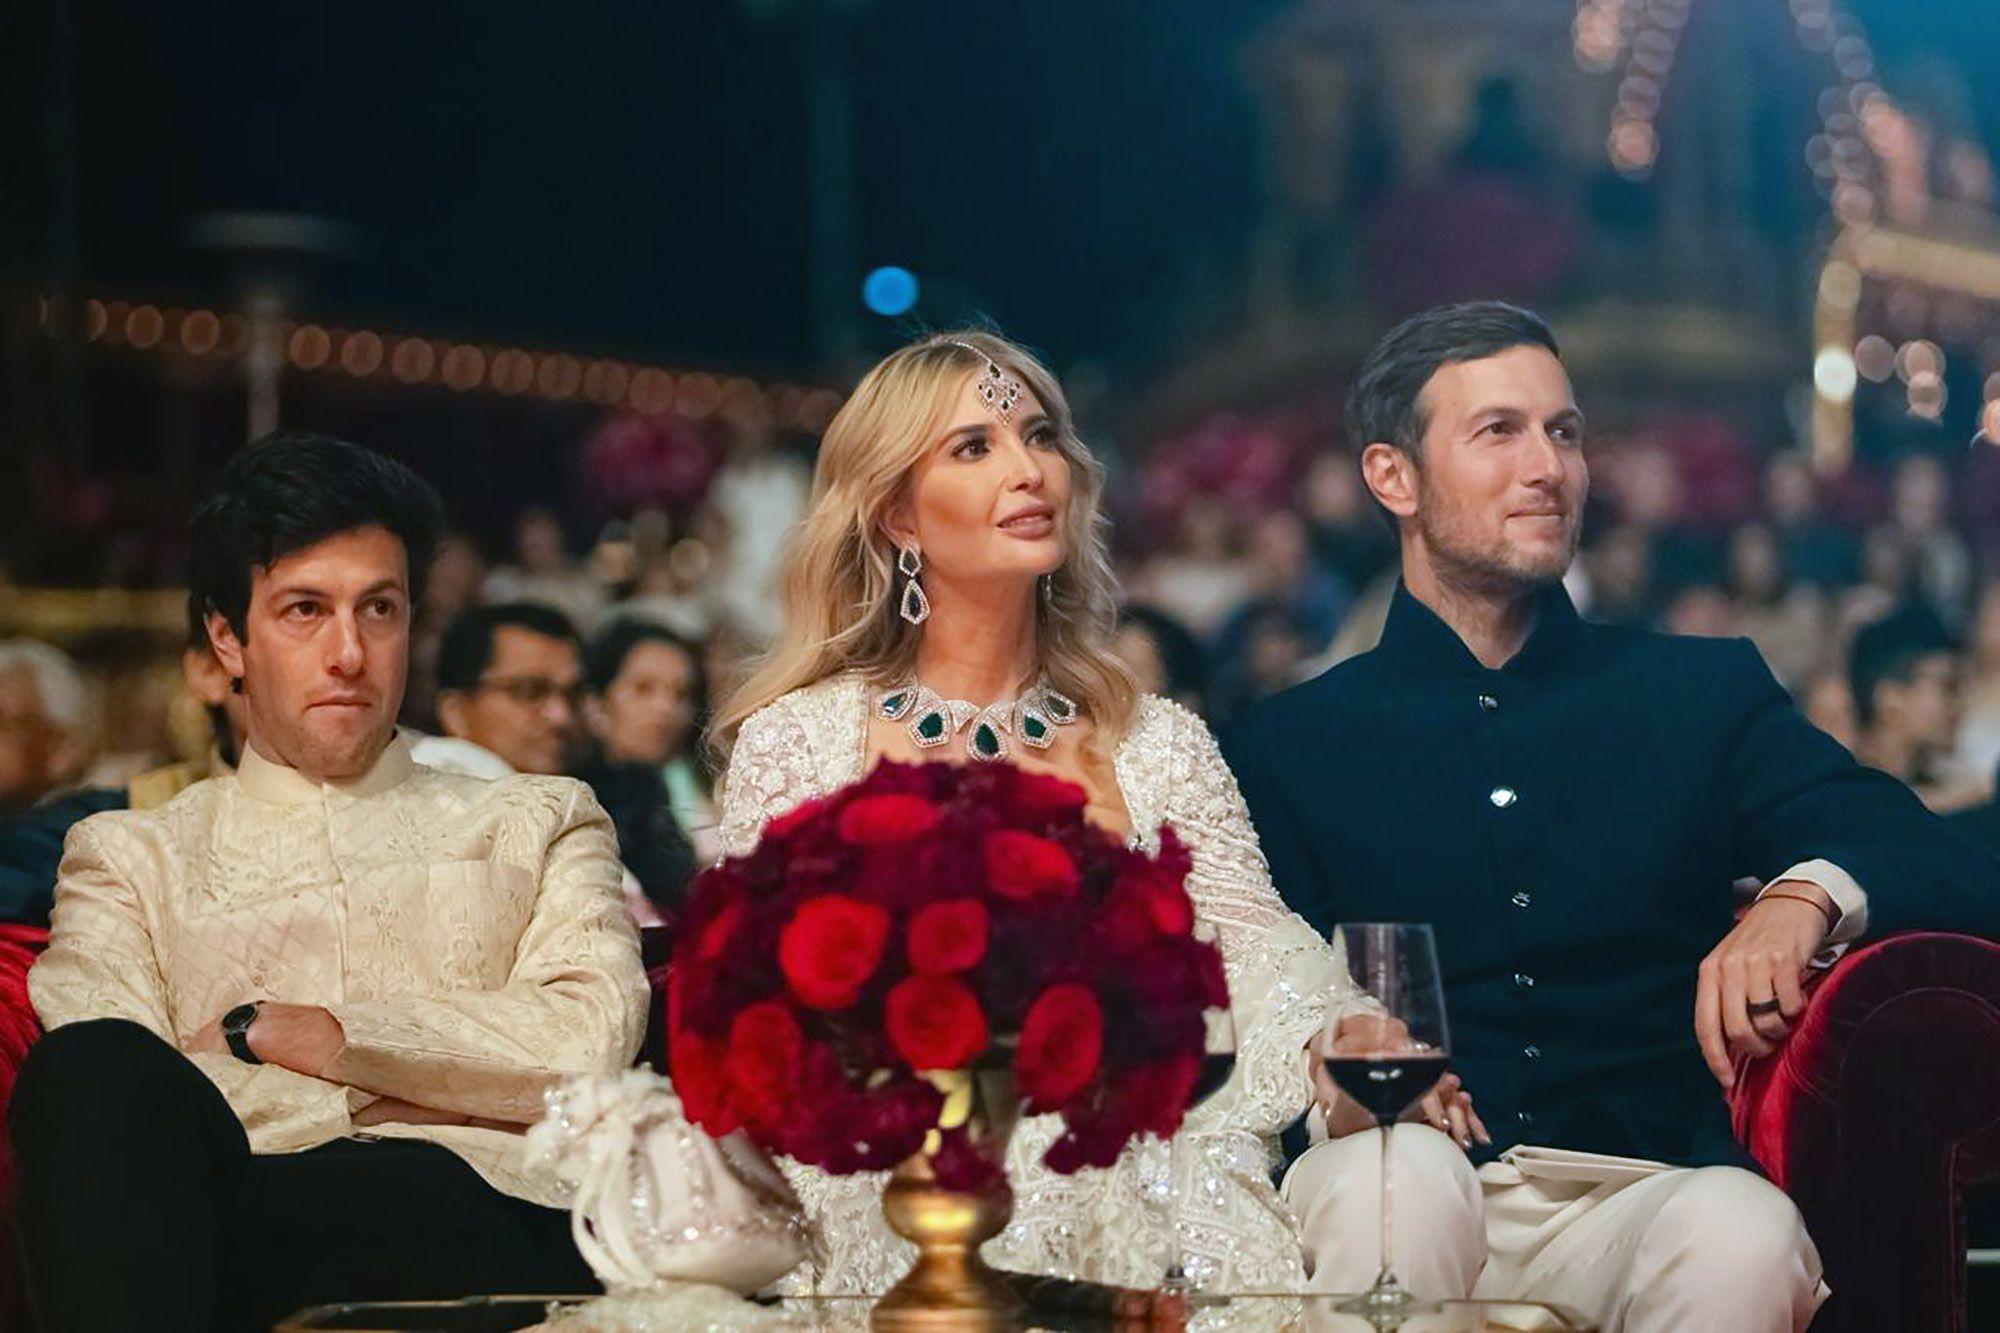 英文外刊阅读: No expense was spared at Indian billionaire heir’s pre-wedding